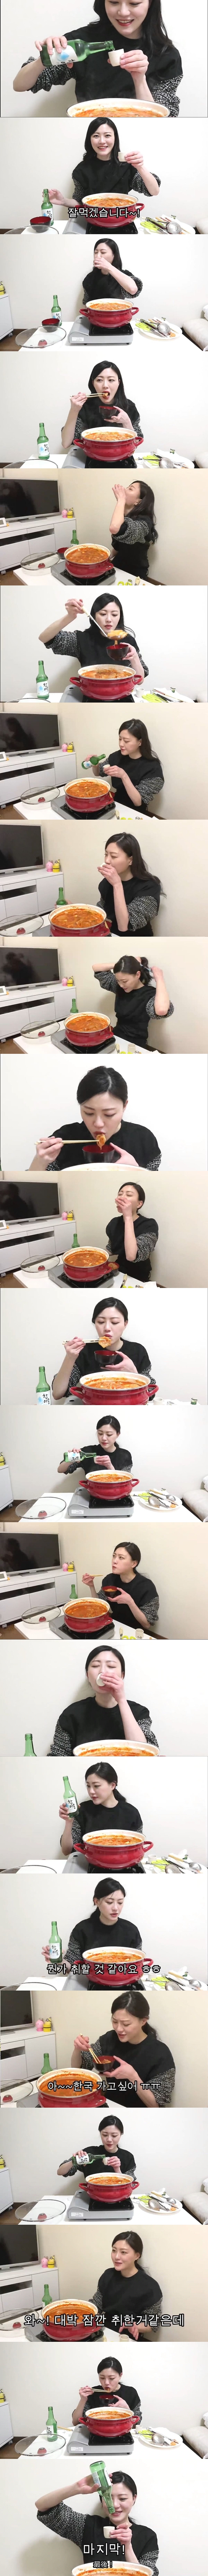 김치찌개 끓여먹기에 도전하는 일본 유투버.JPG